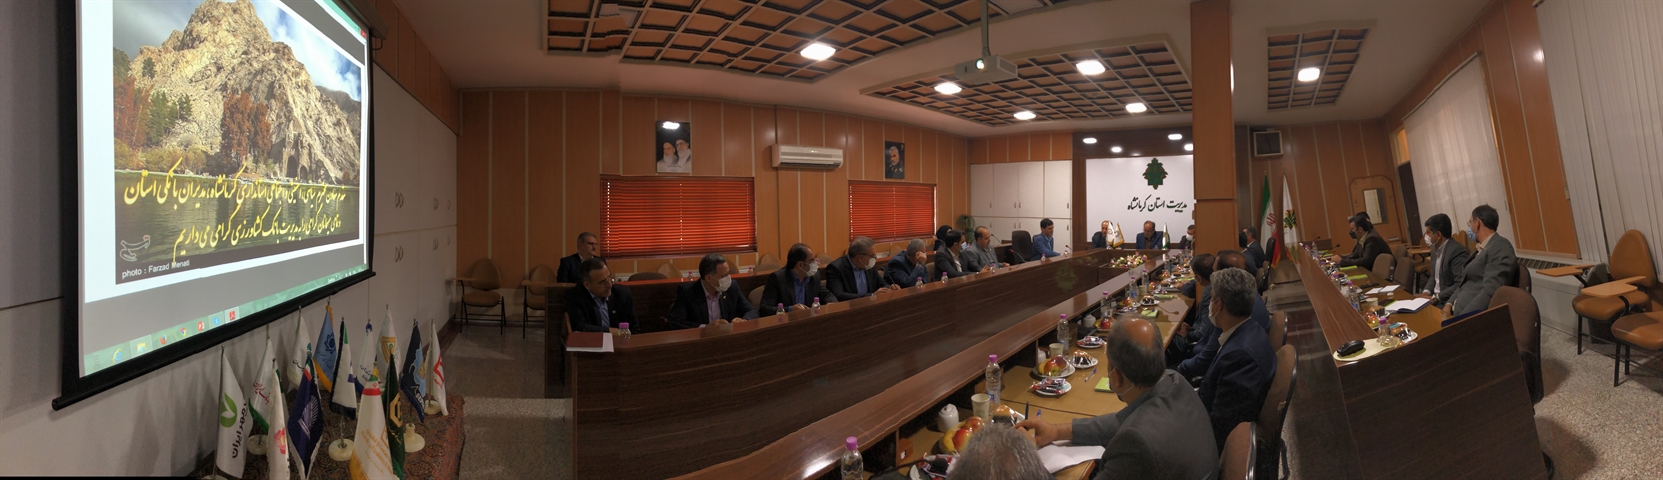 گردهمایی شورای هماهنگی بانک های استان در محل مدیریت بانک کشاورزی